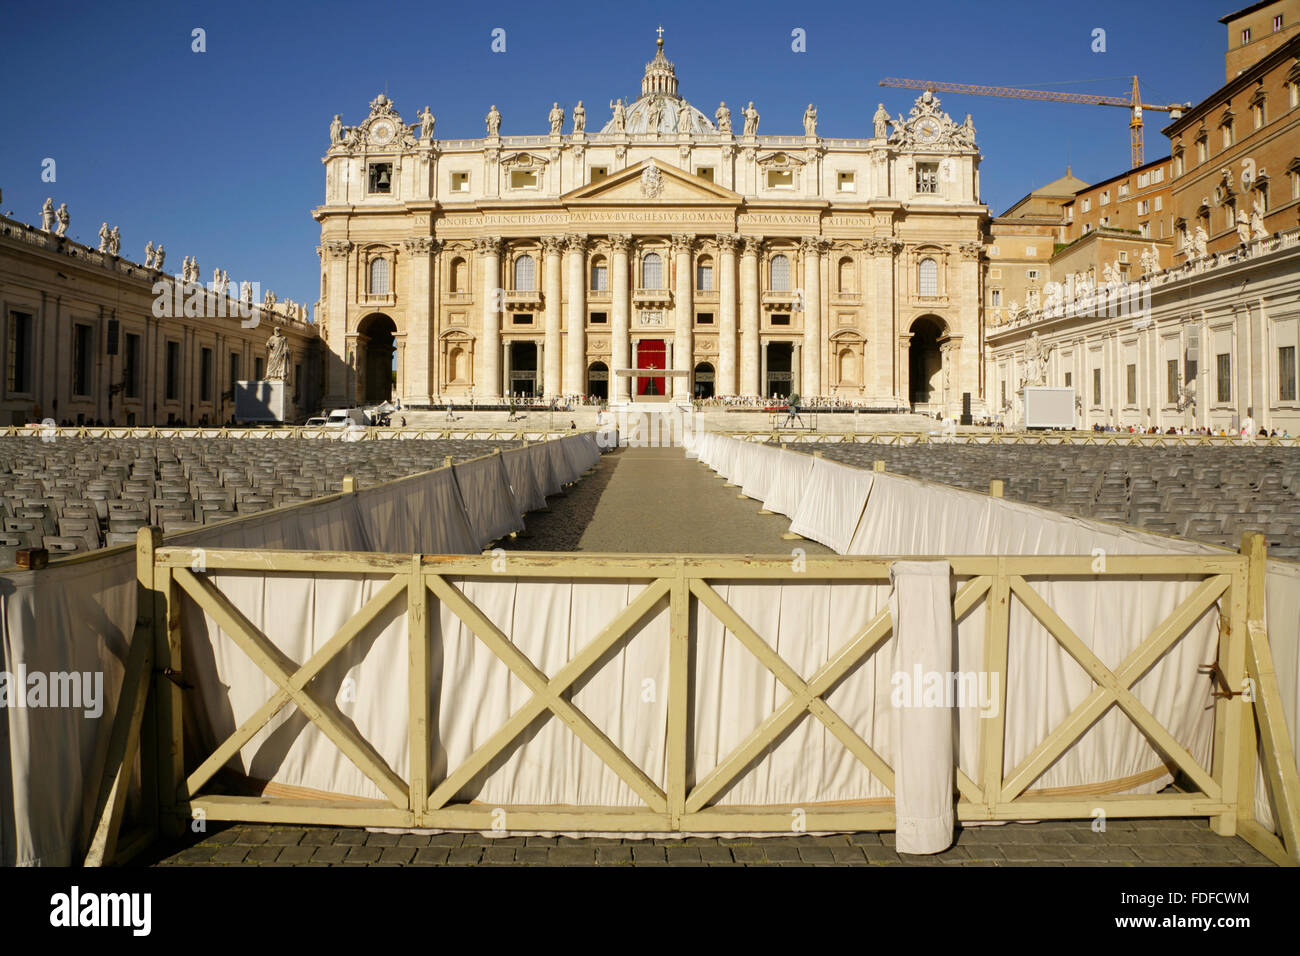 Dans le coin vide la Piazza San Pietro en face de la Basilica di San Pietro (St Peter's), Cité du Vatican, Rome, Italie. Banque D'Images